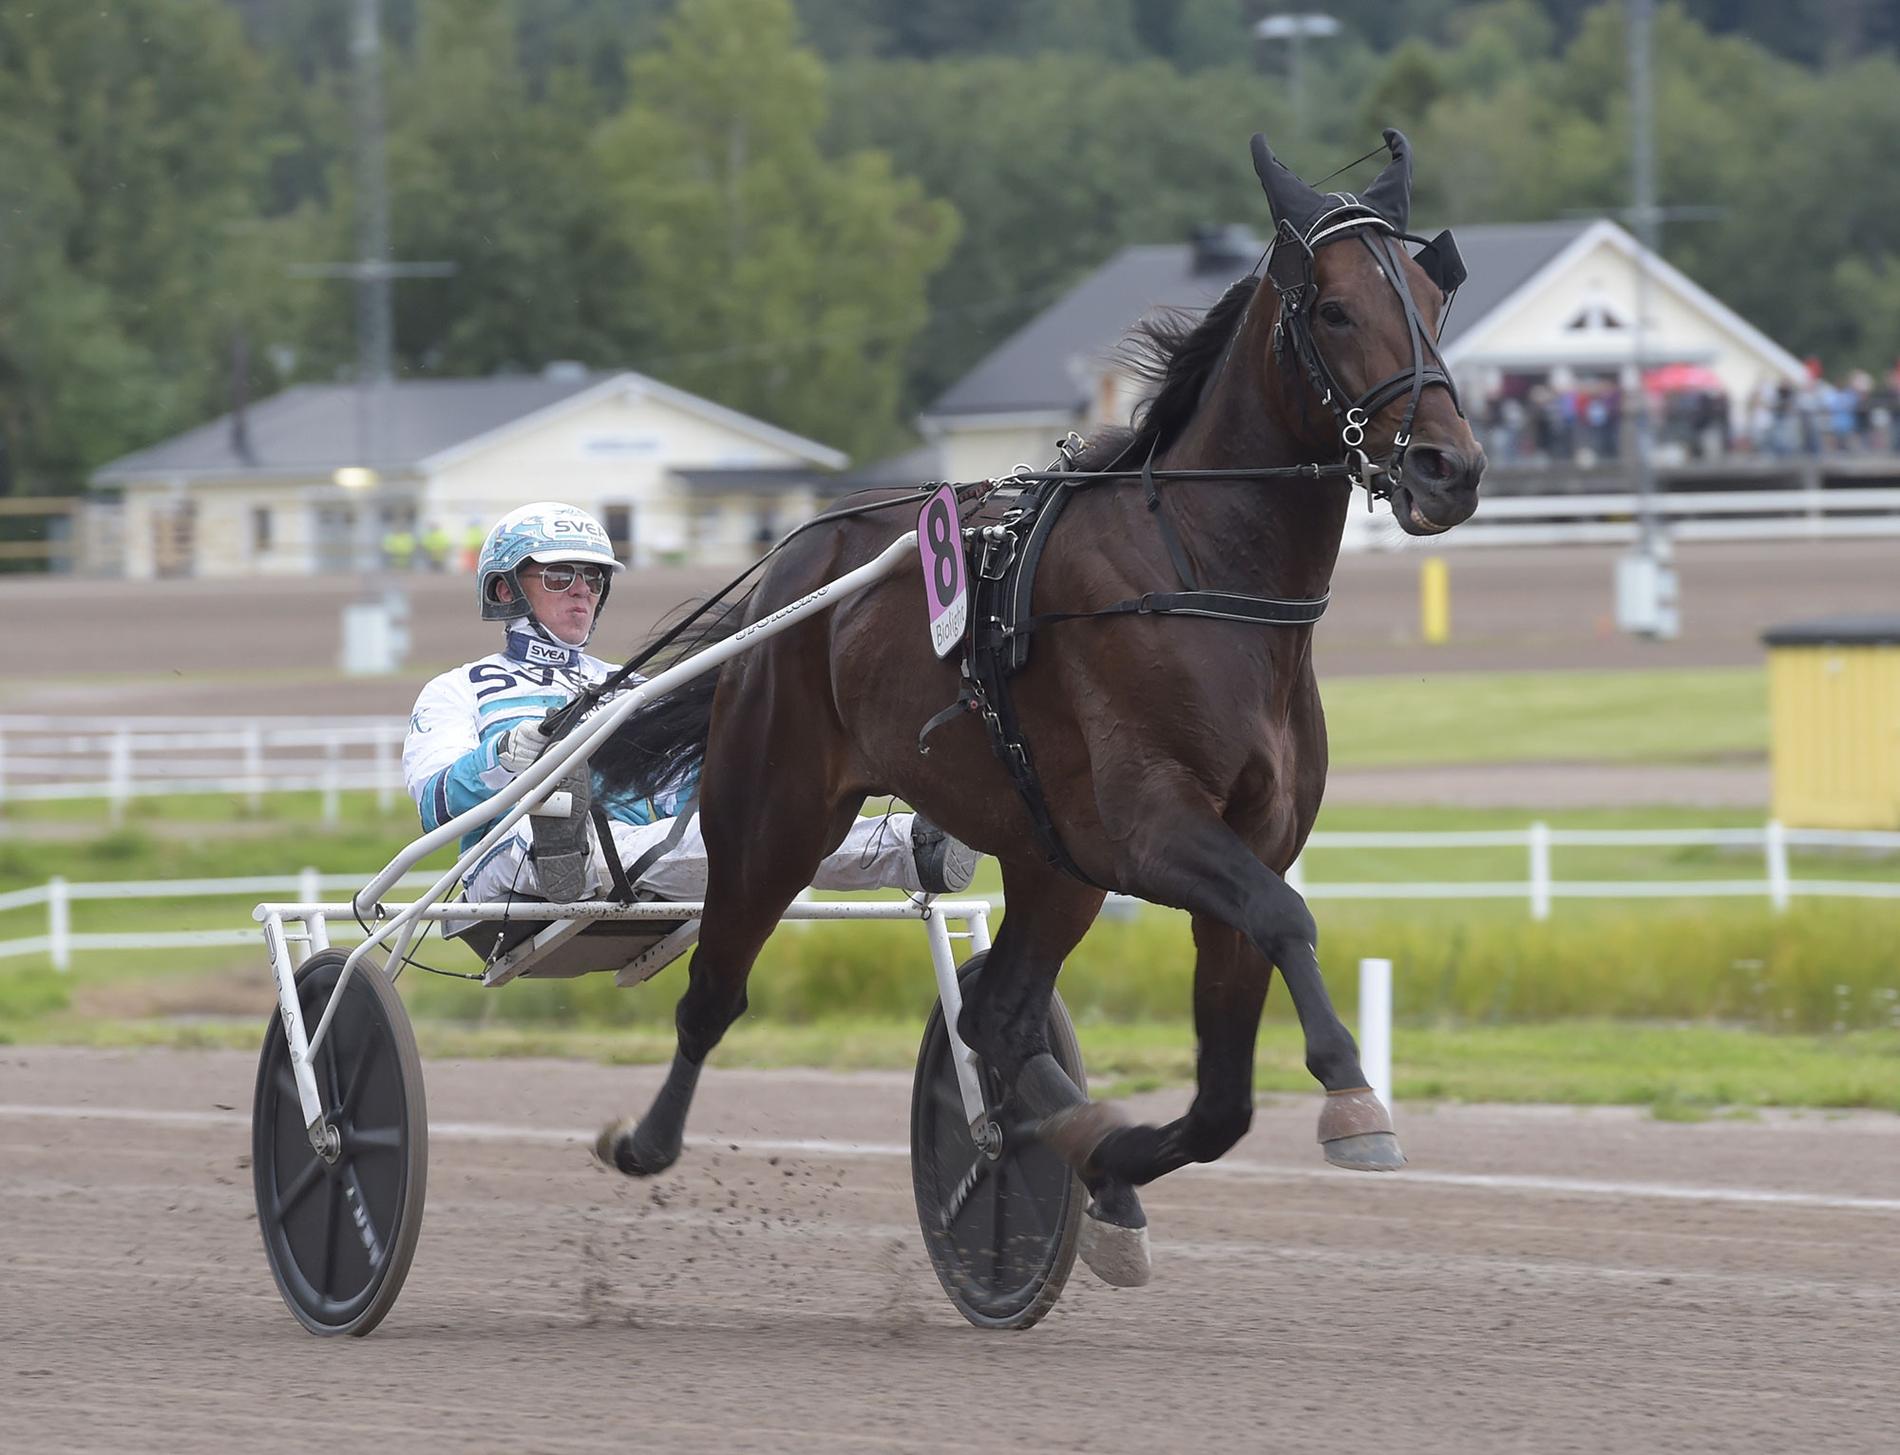 Sportbladets krönikör Mattias Karlsson vill se att Solvalla-stjärnan Propulsion blir nästa häst att bli inbjuden till Elitloppet: ”Känn stolthet över de egna”